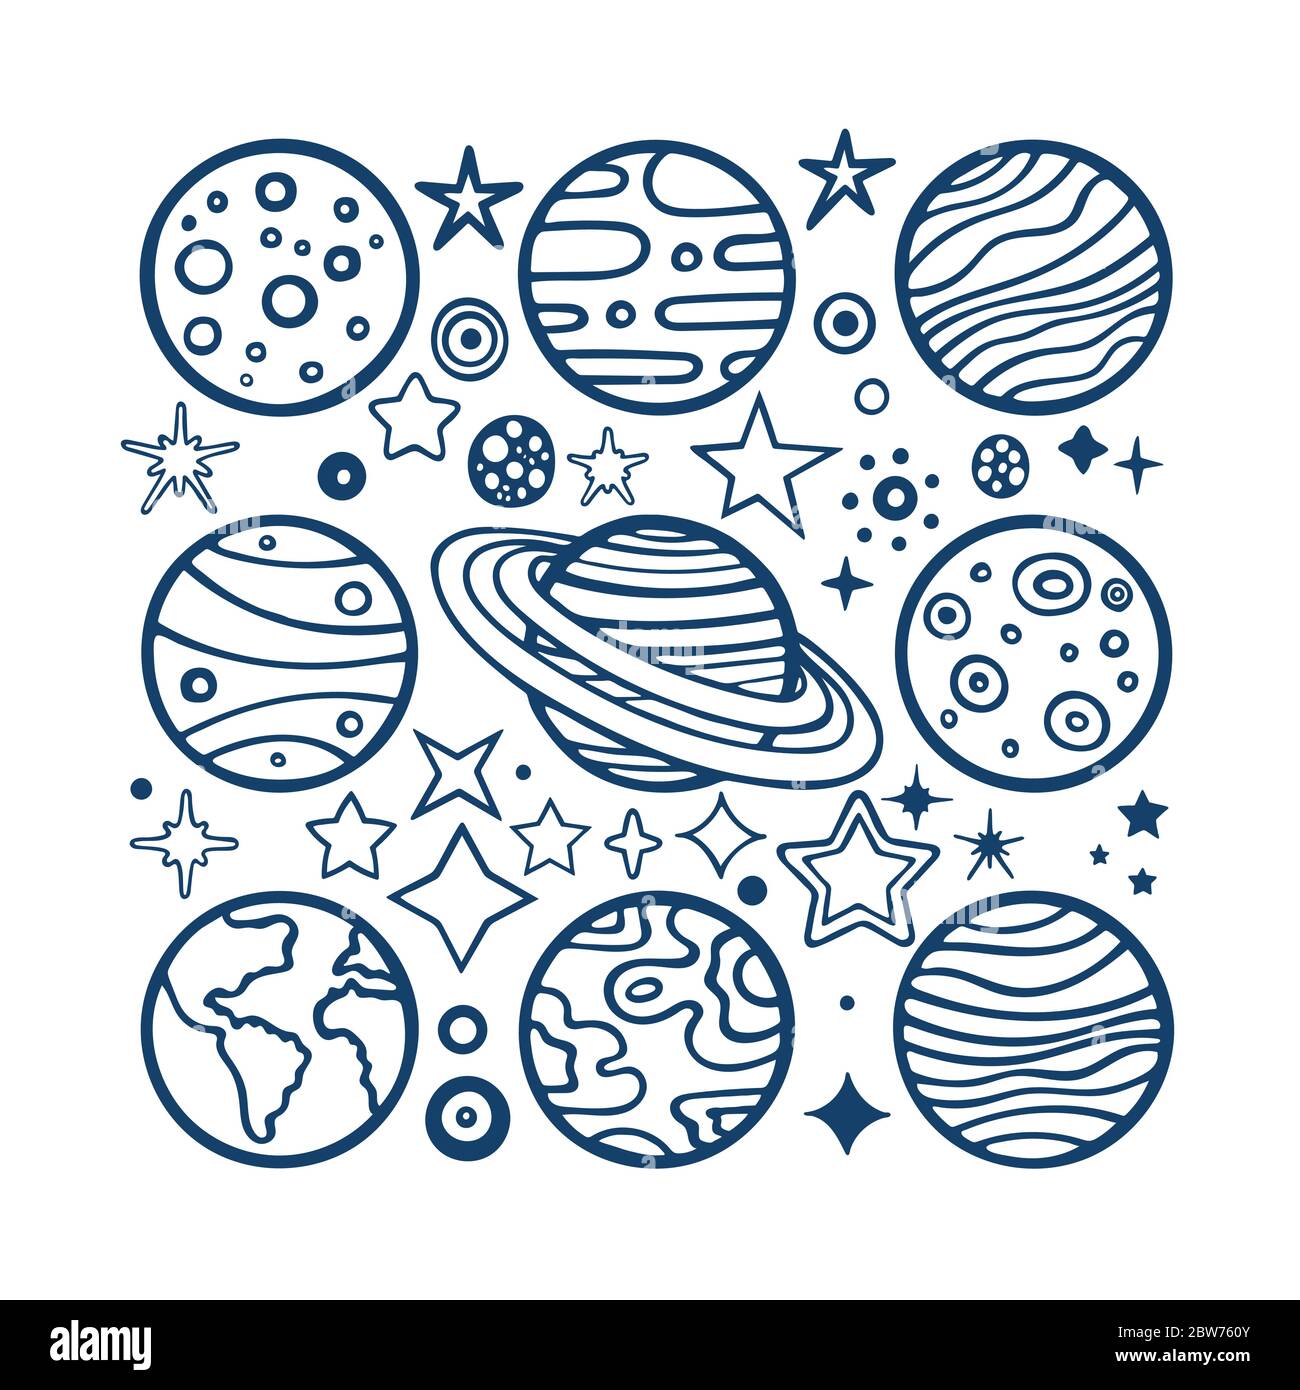 Planet Drawing Images  Free Download on Freepik